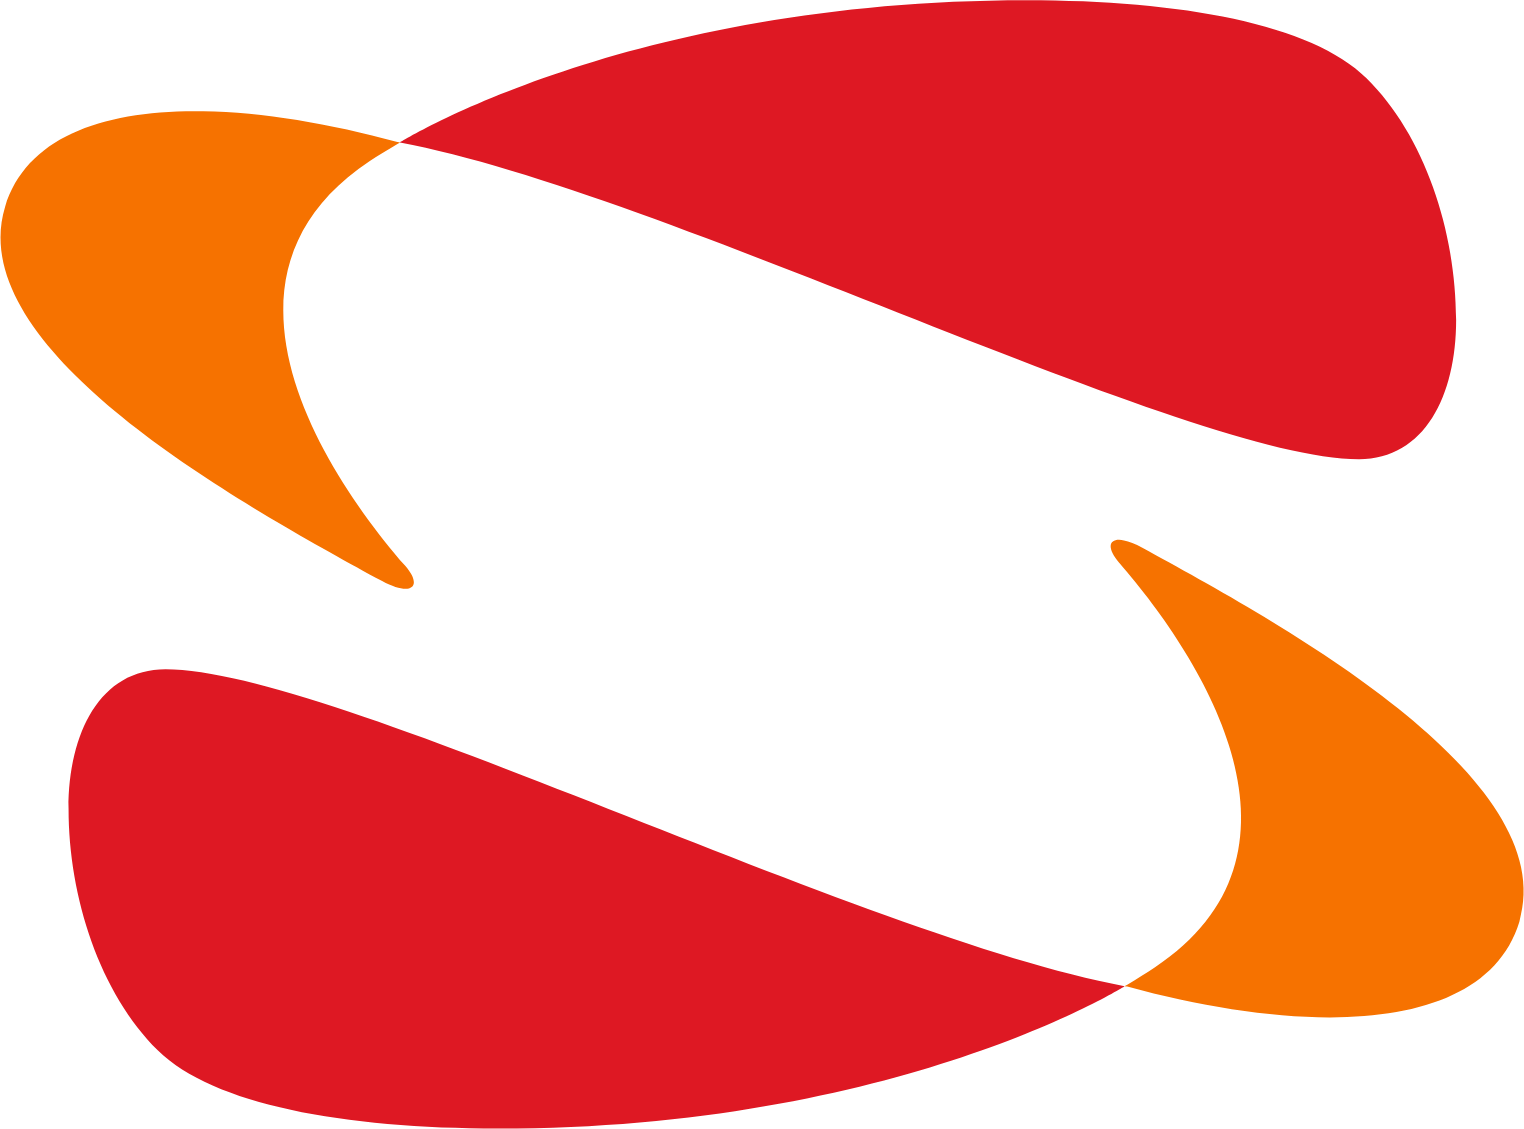 Sopra Steria Group Logo (transparentes PNG)